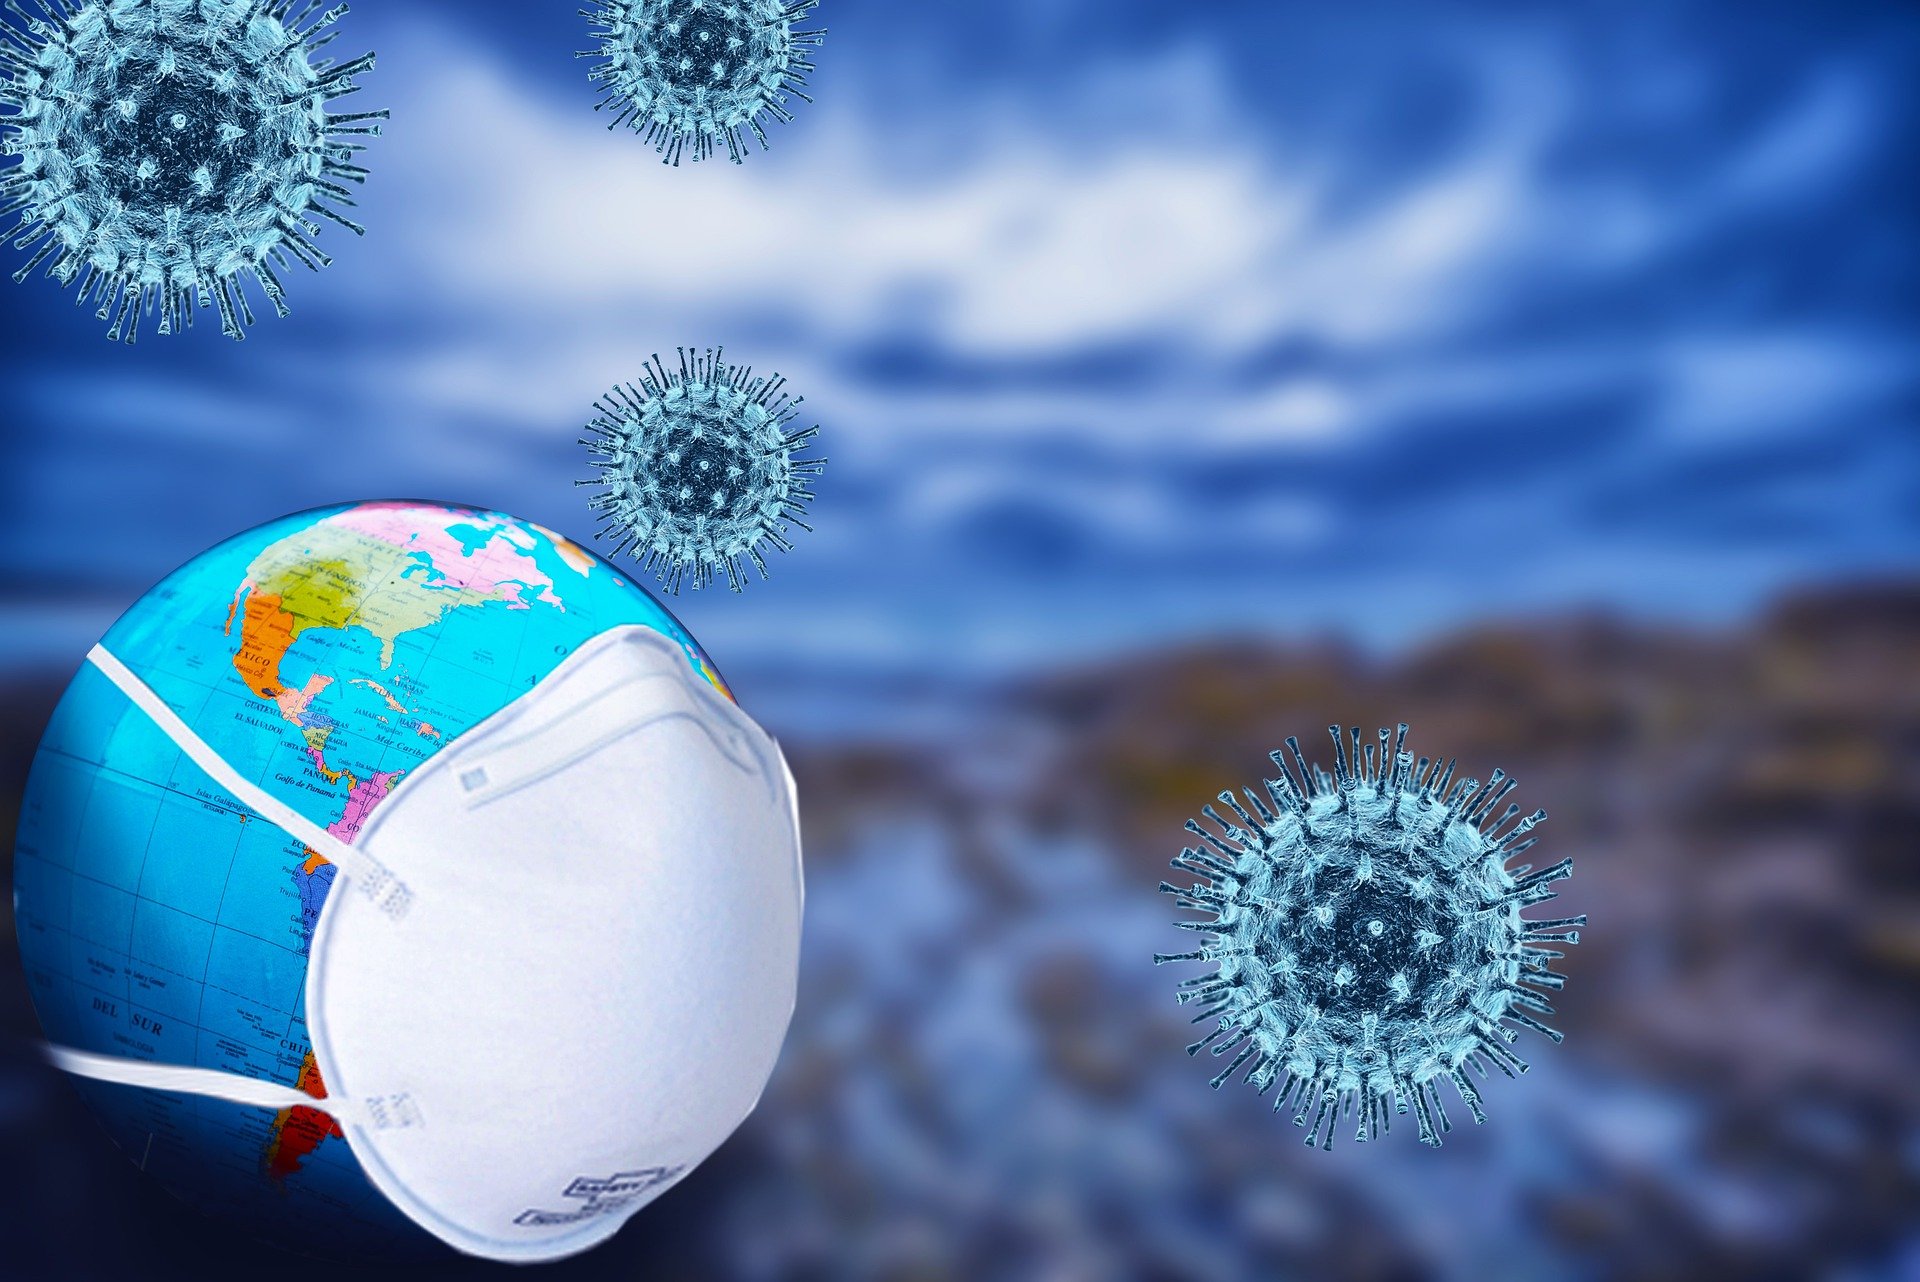 Une illustration pour encourager le port de masques dans le contexte de la pandémie de coronavirus. | Photo : Pixabay